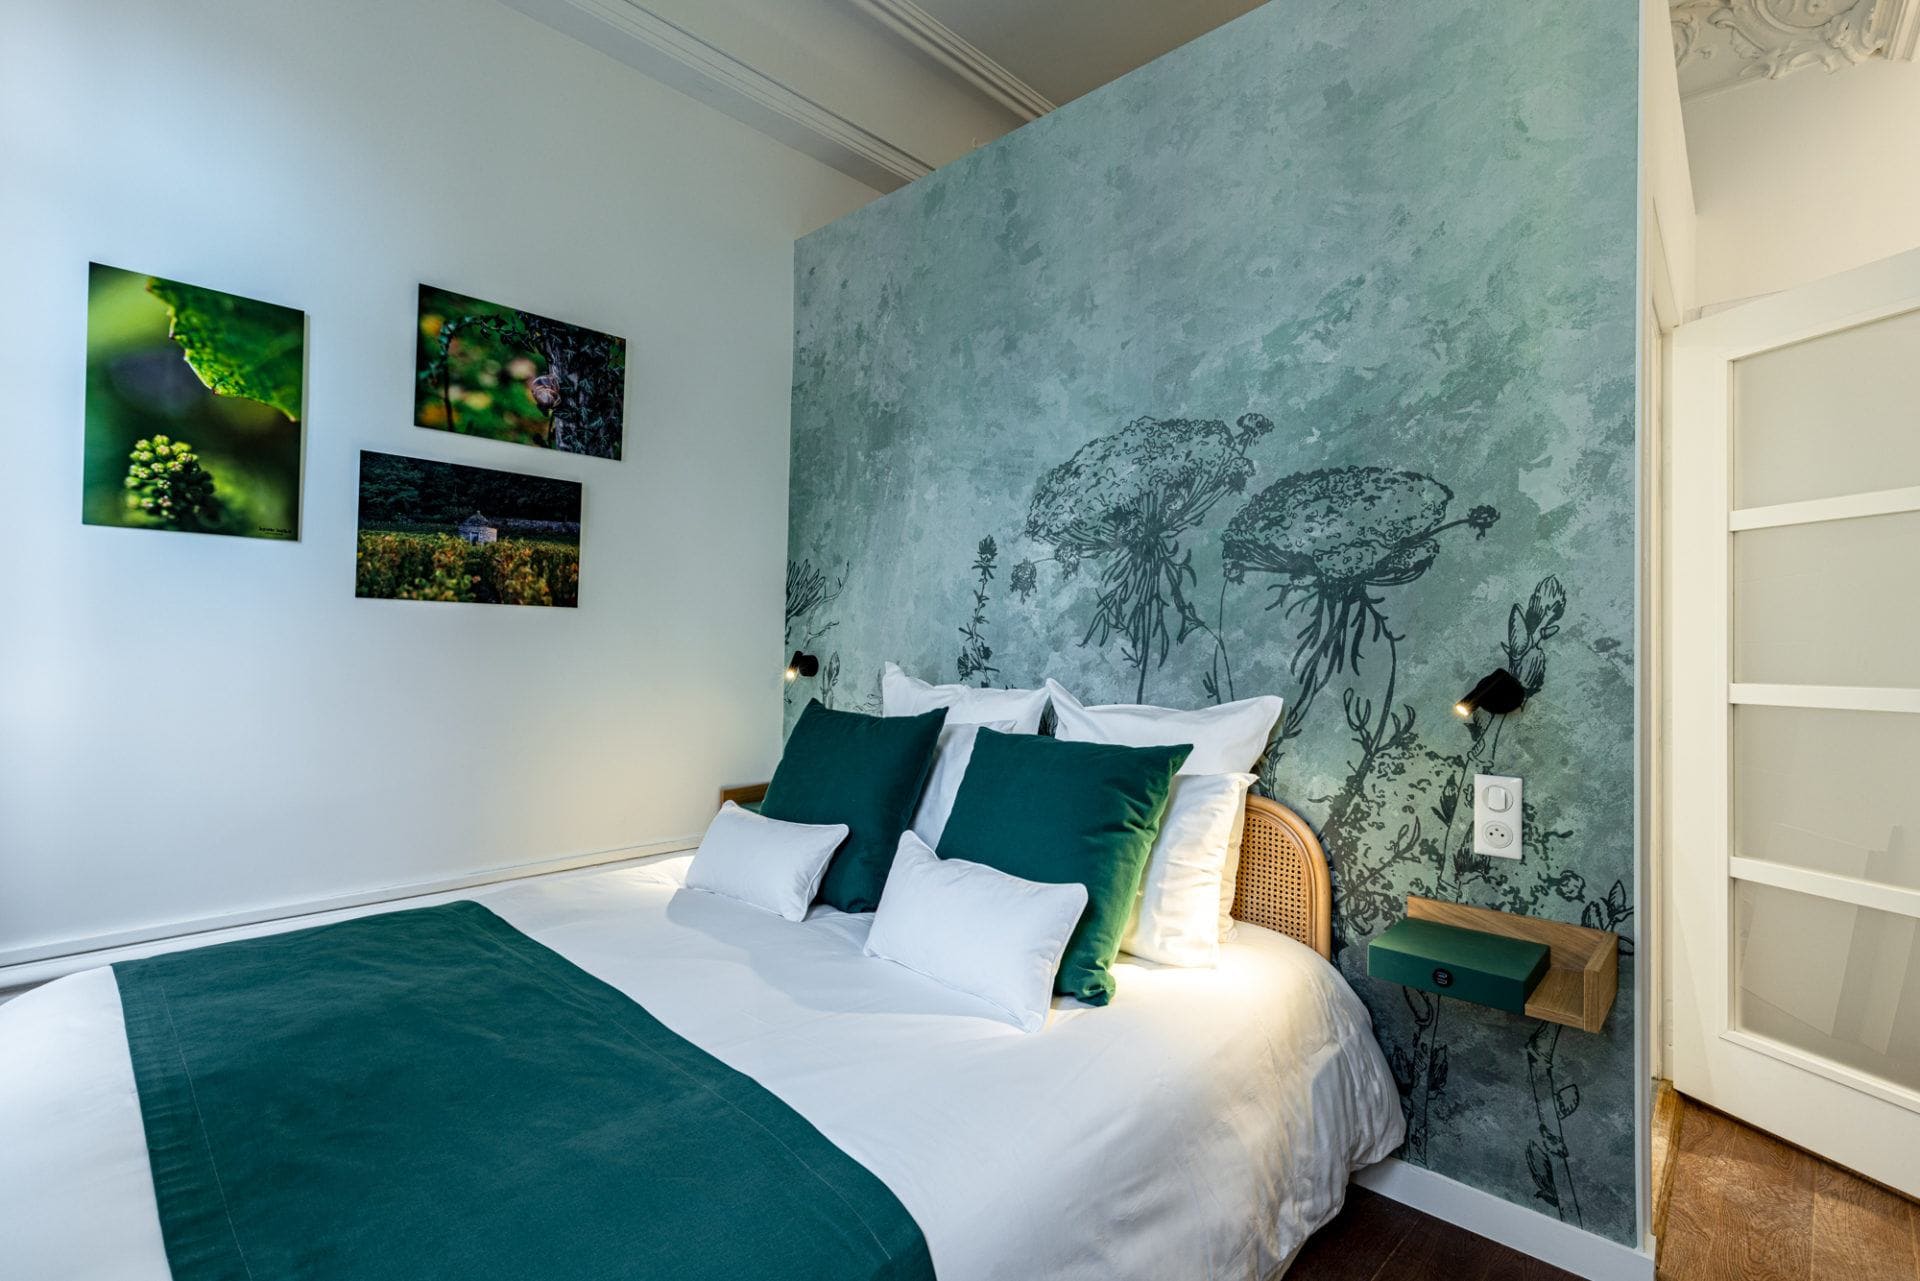 Charmante chambre avec lit deux places, cadre photos, tons verts